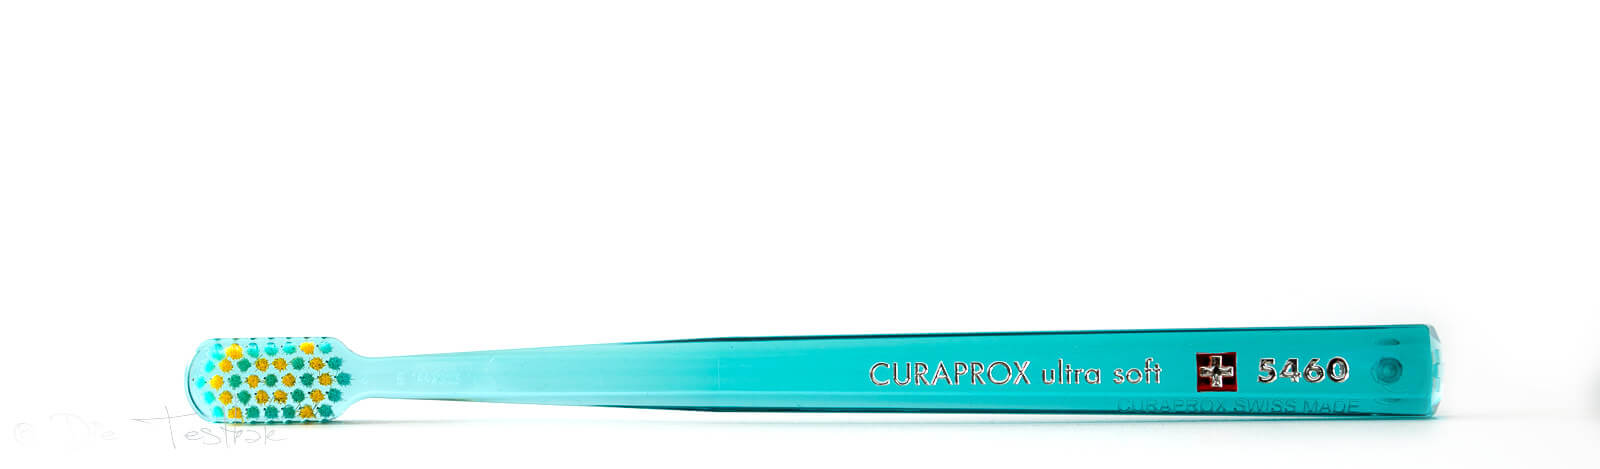 Curaprox - Stylisch bunte und innovative Zahnpflege - Alles für die perfekte Mundpflege 48